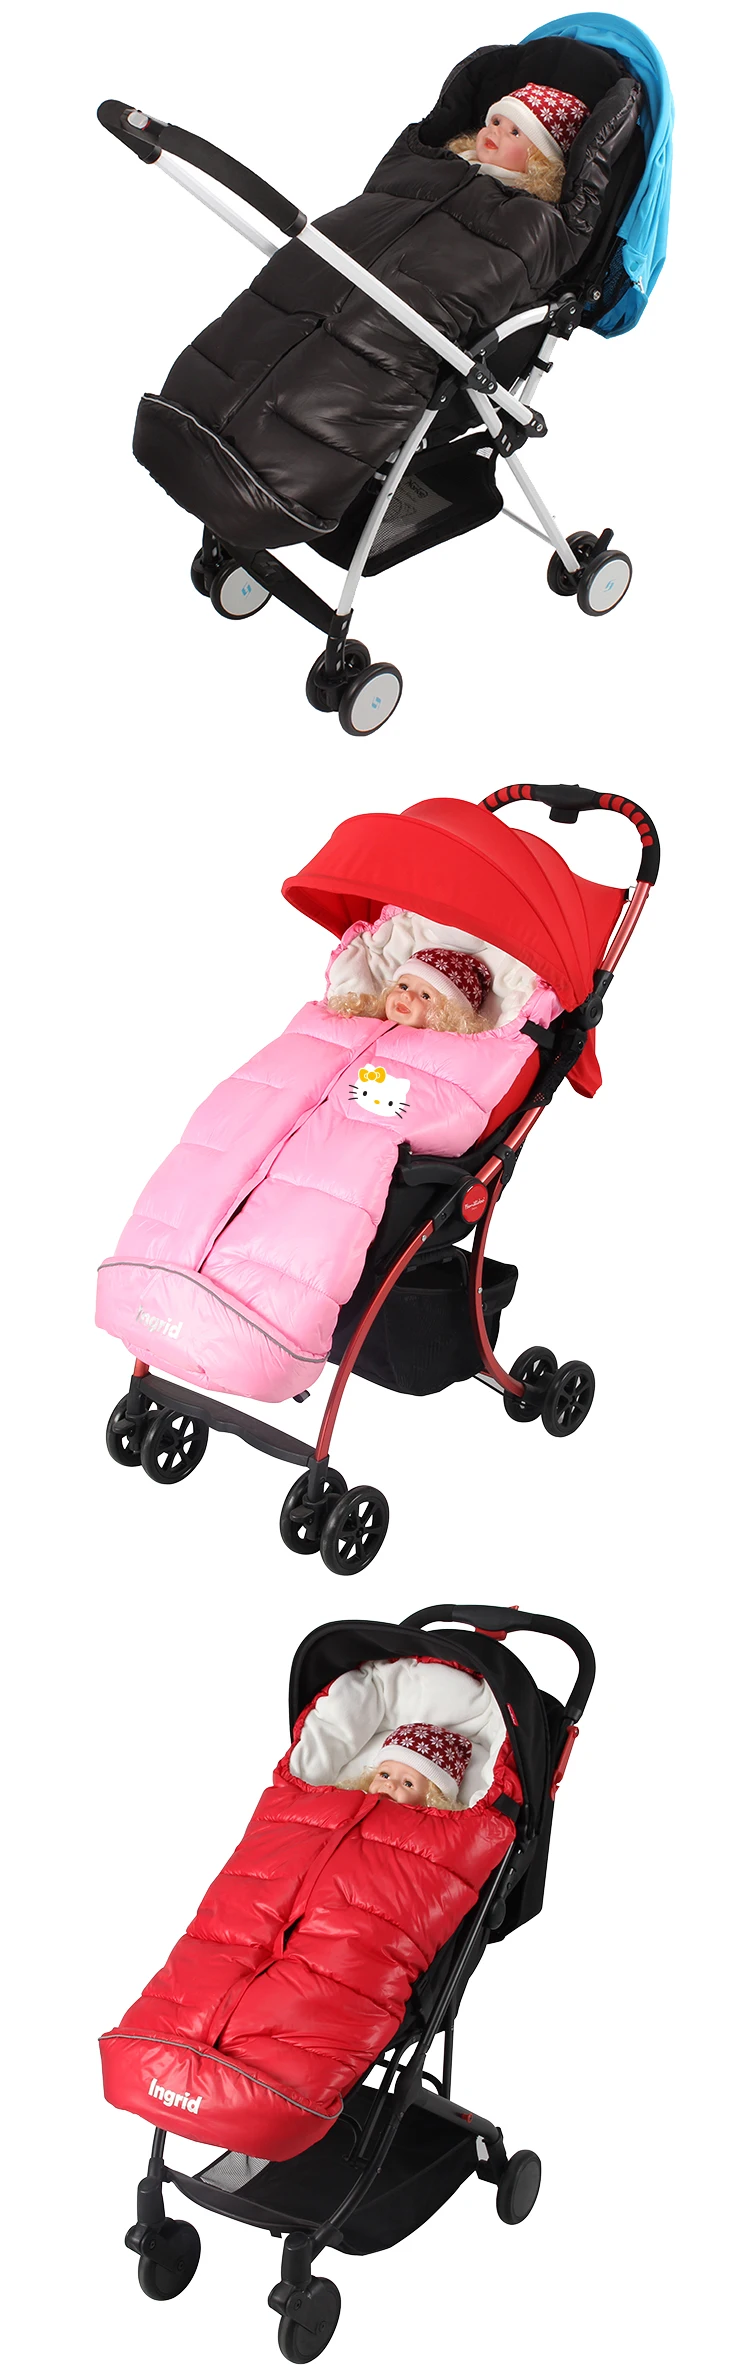 Прогулочная коляска соучастником толстый теплый спальный мешок ножки покрытие для ног ребенка корзина спальный мат одеяло автомобиля